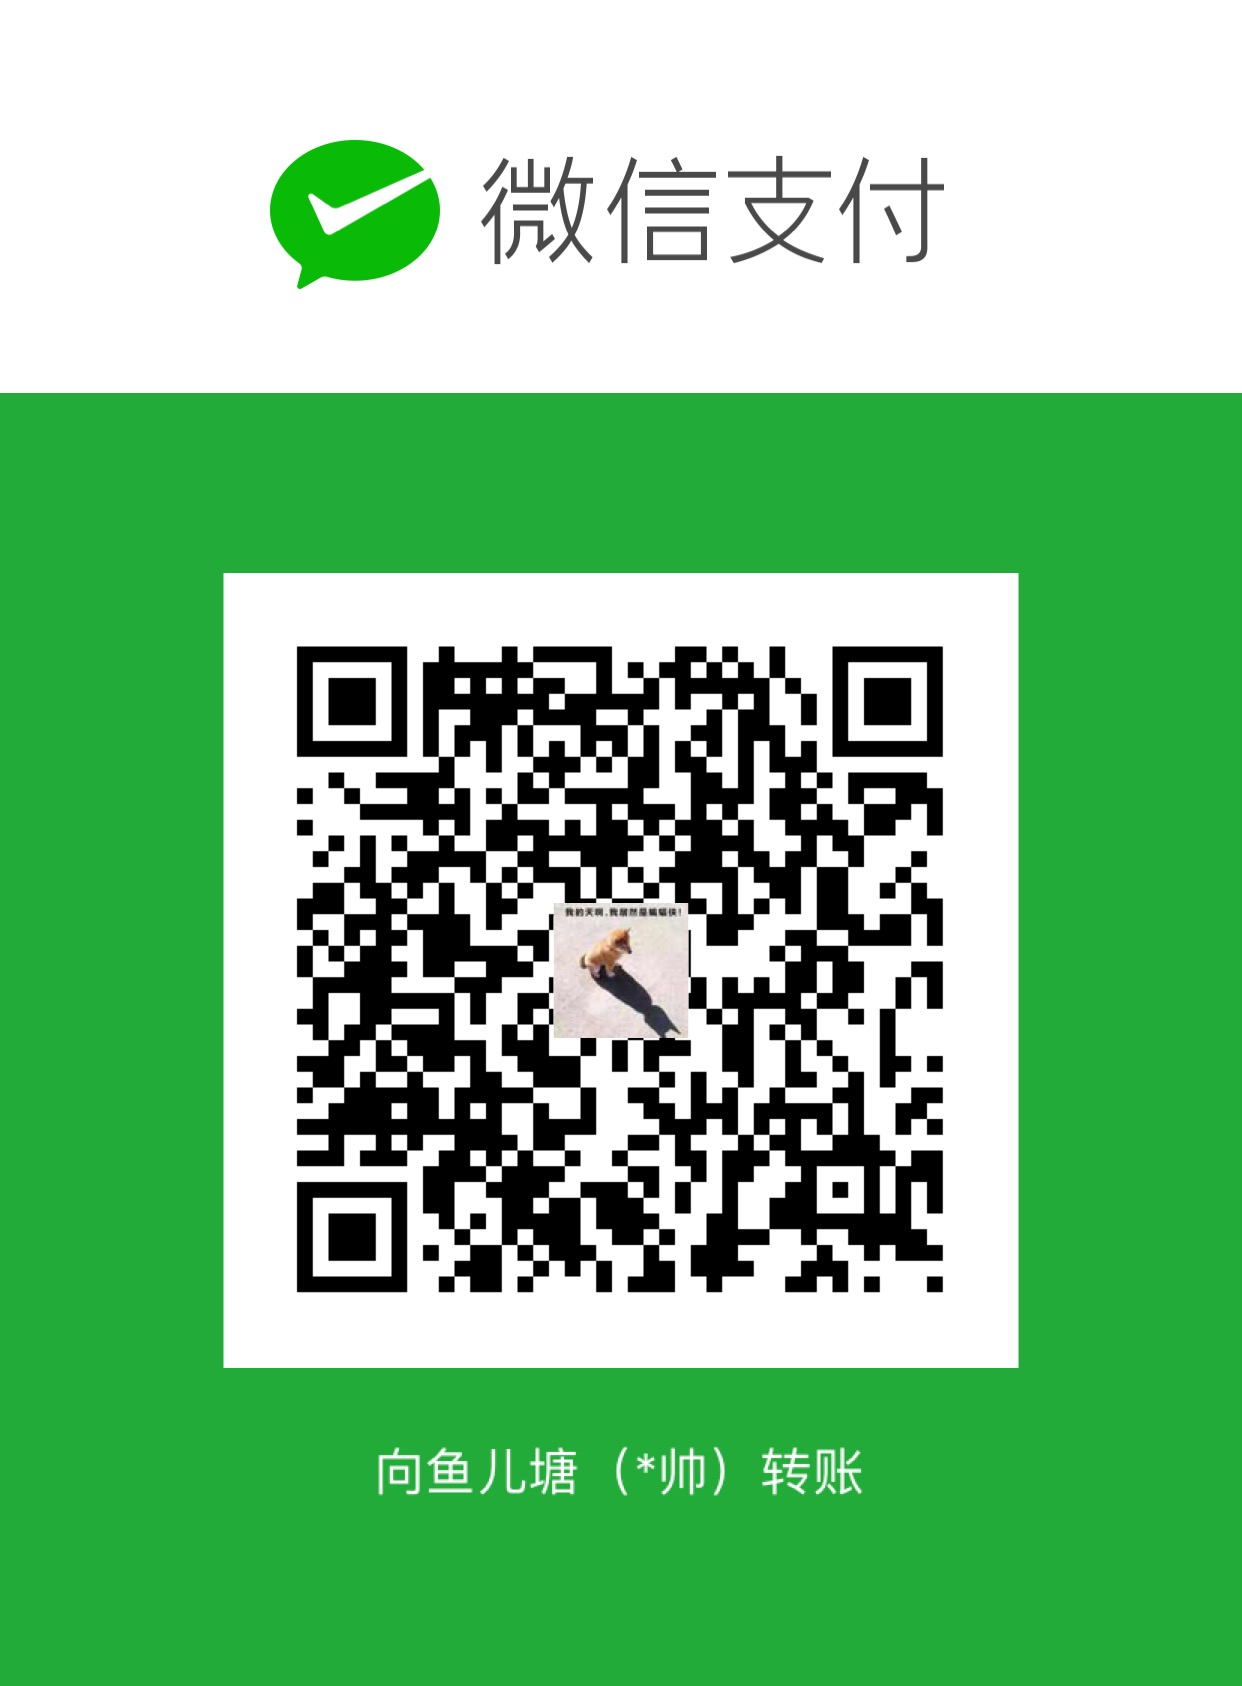 tunsuy WeChat Pay